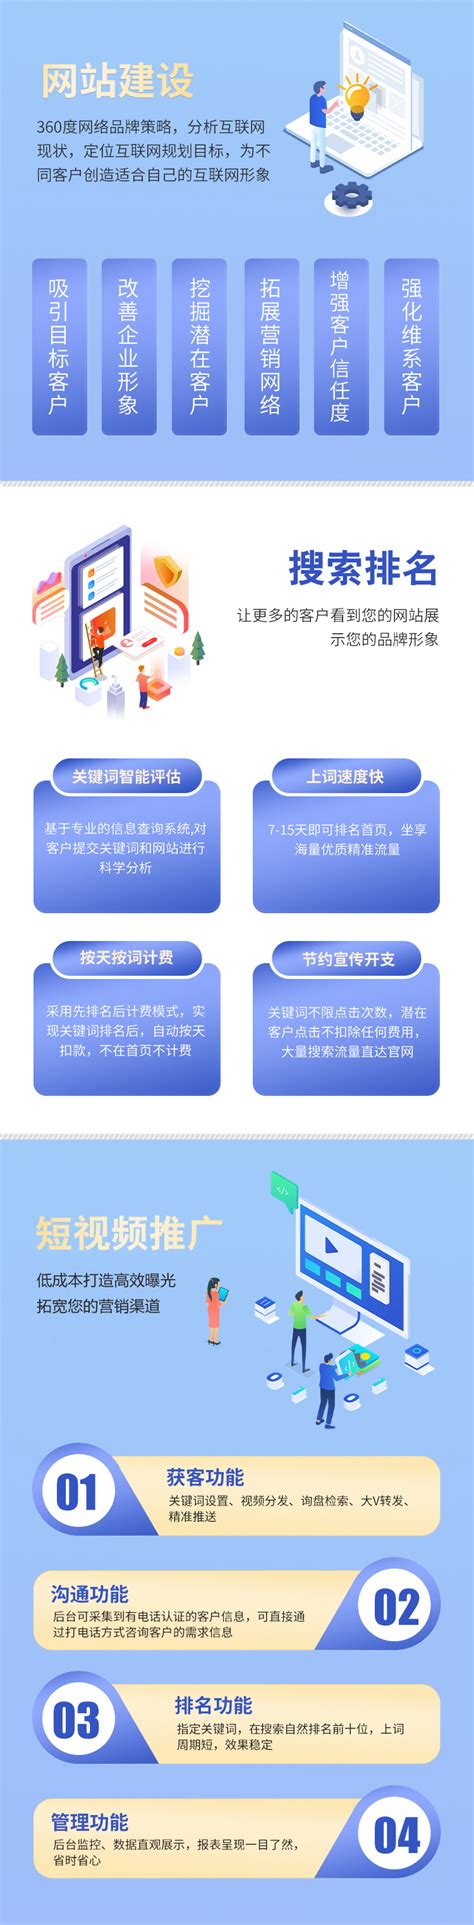 浙江网站建设高端服务平台